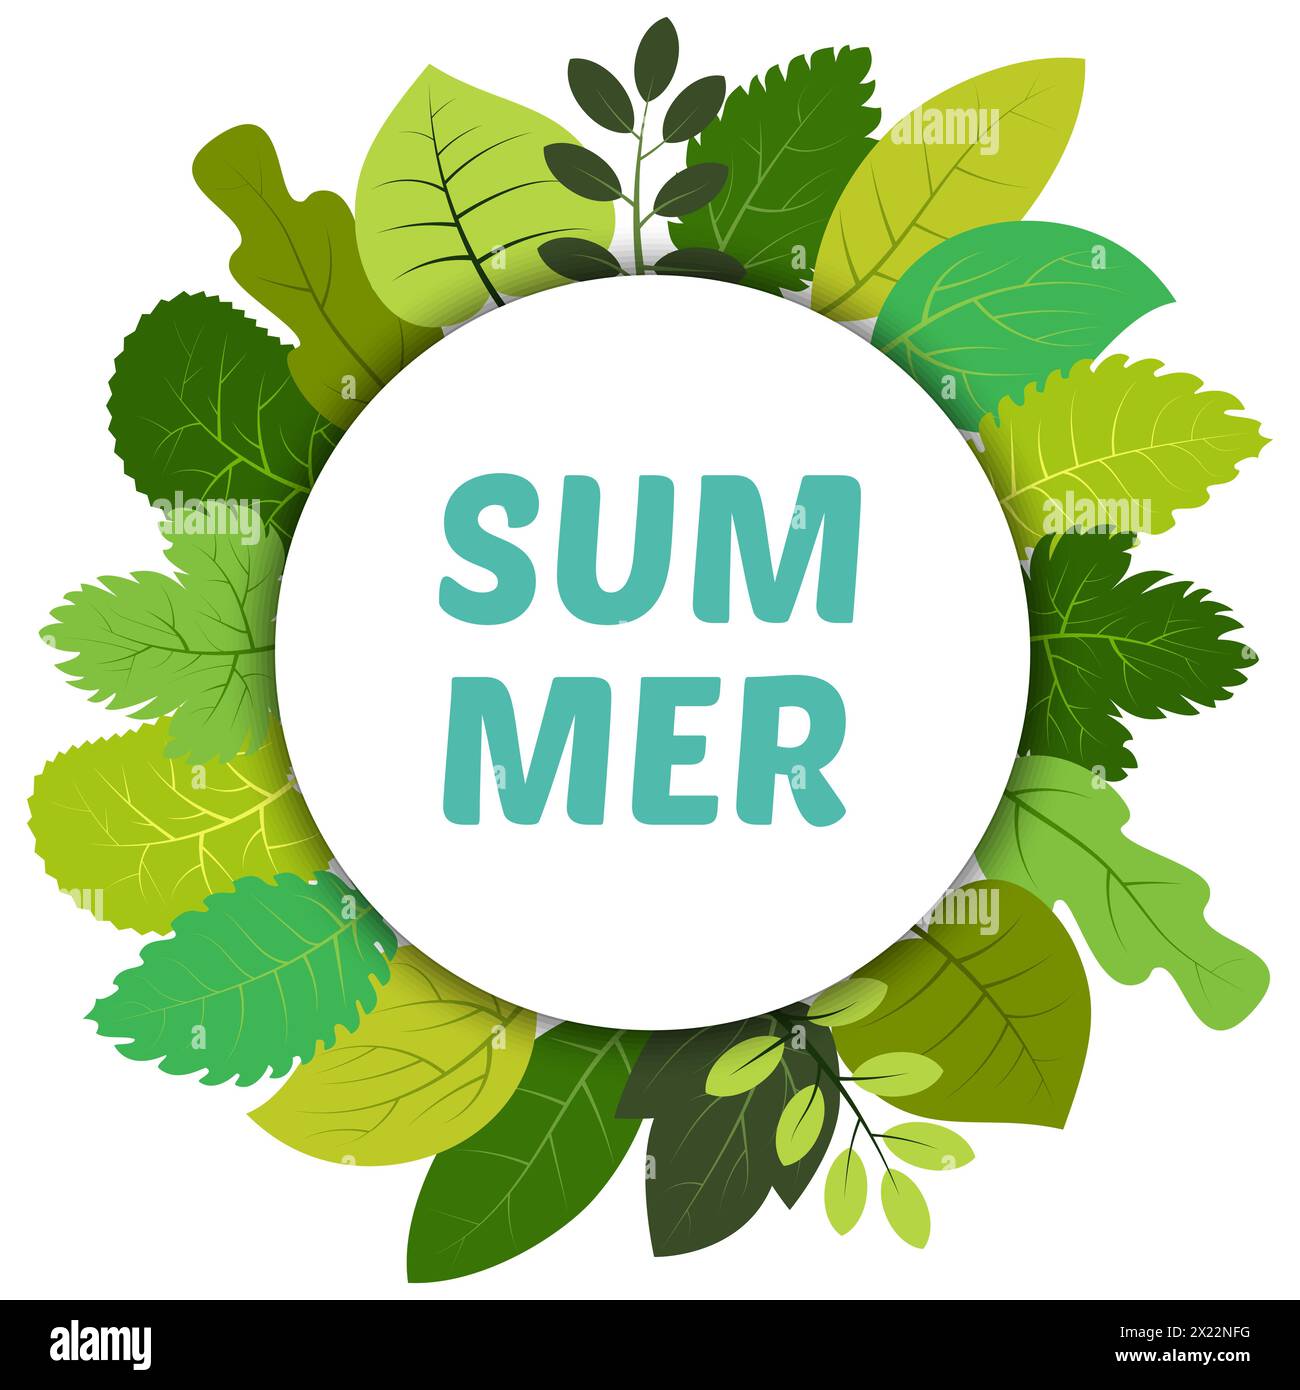 Hojas verdes de verano bajo etiqueta redonda blanca e inscripción verano. Tarjeta de vector con hojas verdes aisladas sobre fondo blanco Ilustración del Vector